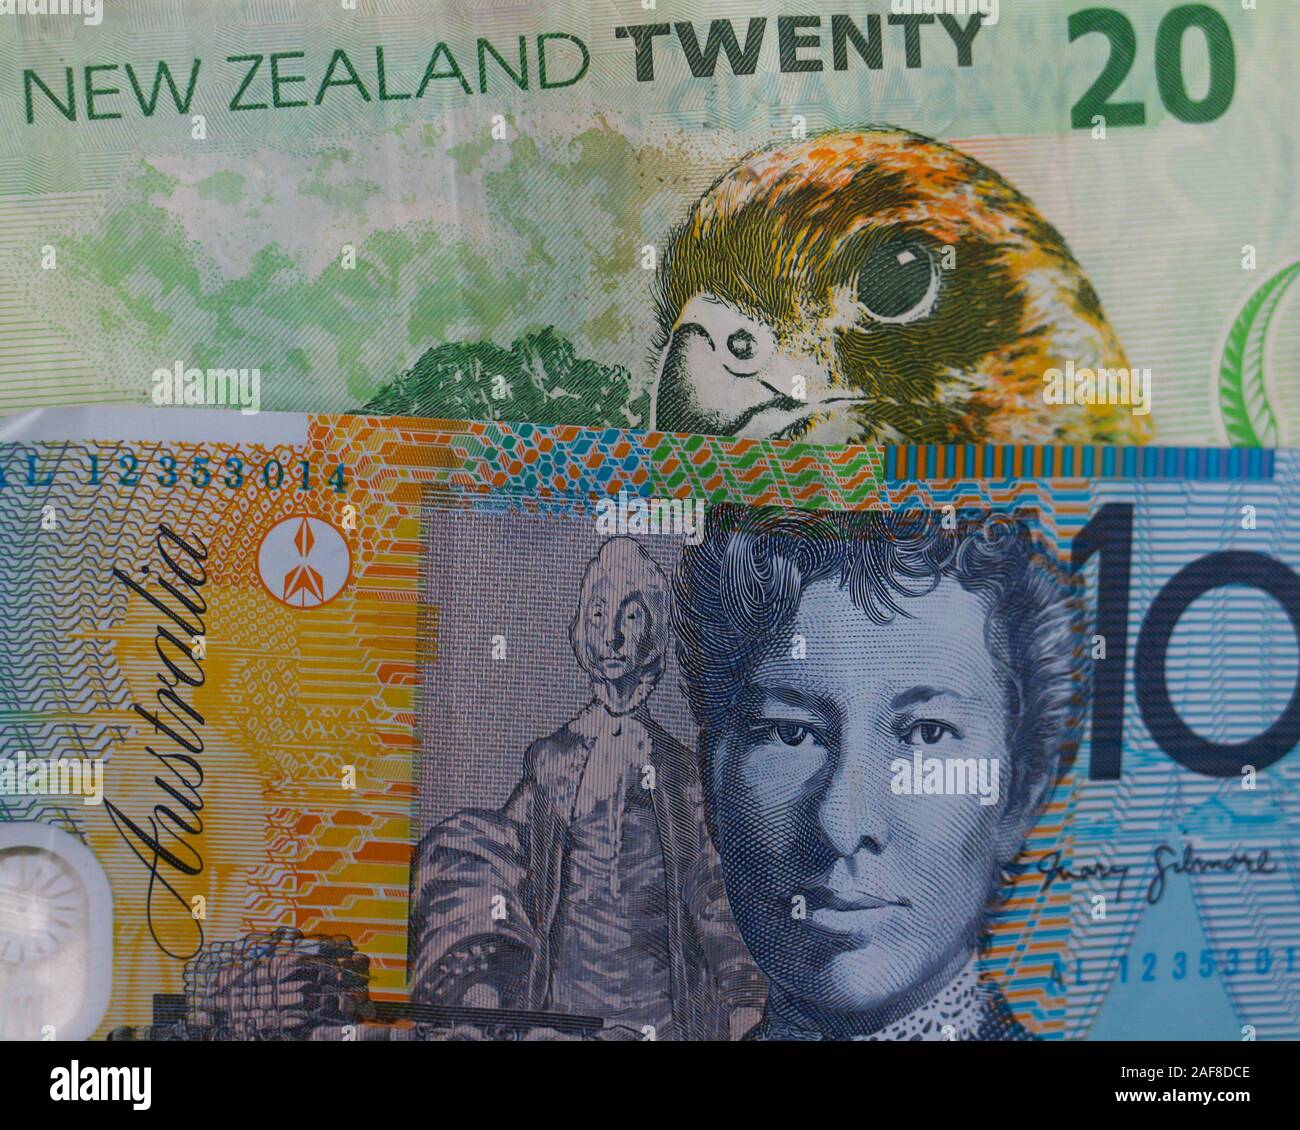 Der neuseeländische Dollar und Australischer Dollar Währungen: Detail von Banknoten der South Pacific Nationen und freundliche Rivalen Neuseeland und Australien. Stockfoto